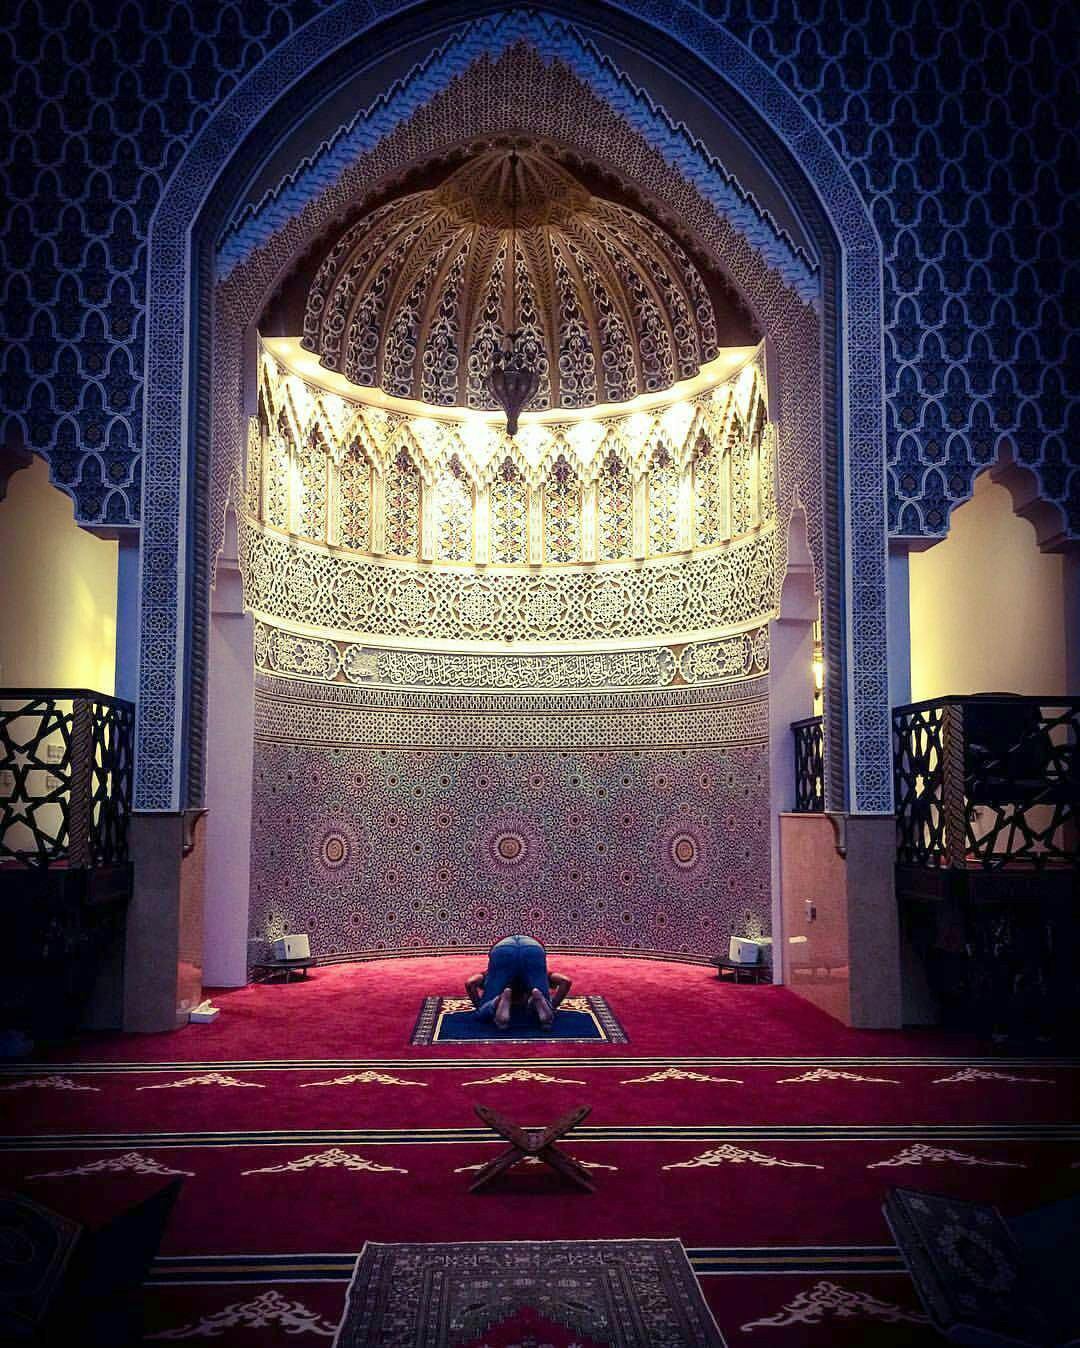 al-farooq-omar-ibn-al-khattab-mosque-in-dubai-united-arab-emirates-qibla.jpg